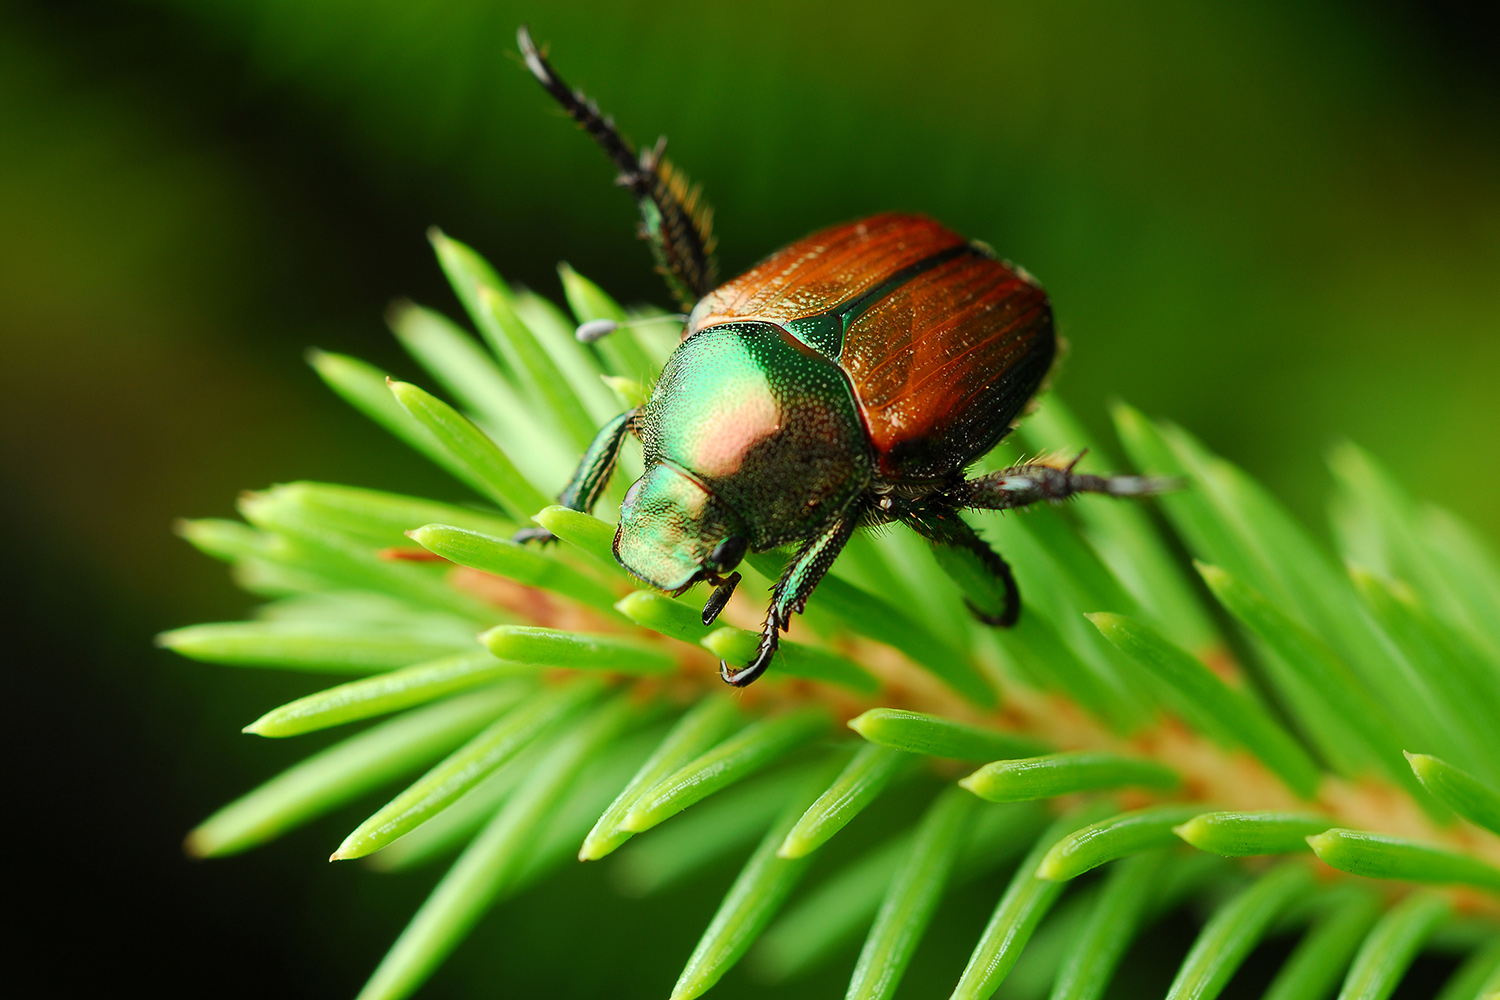 japanese beetle on plant